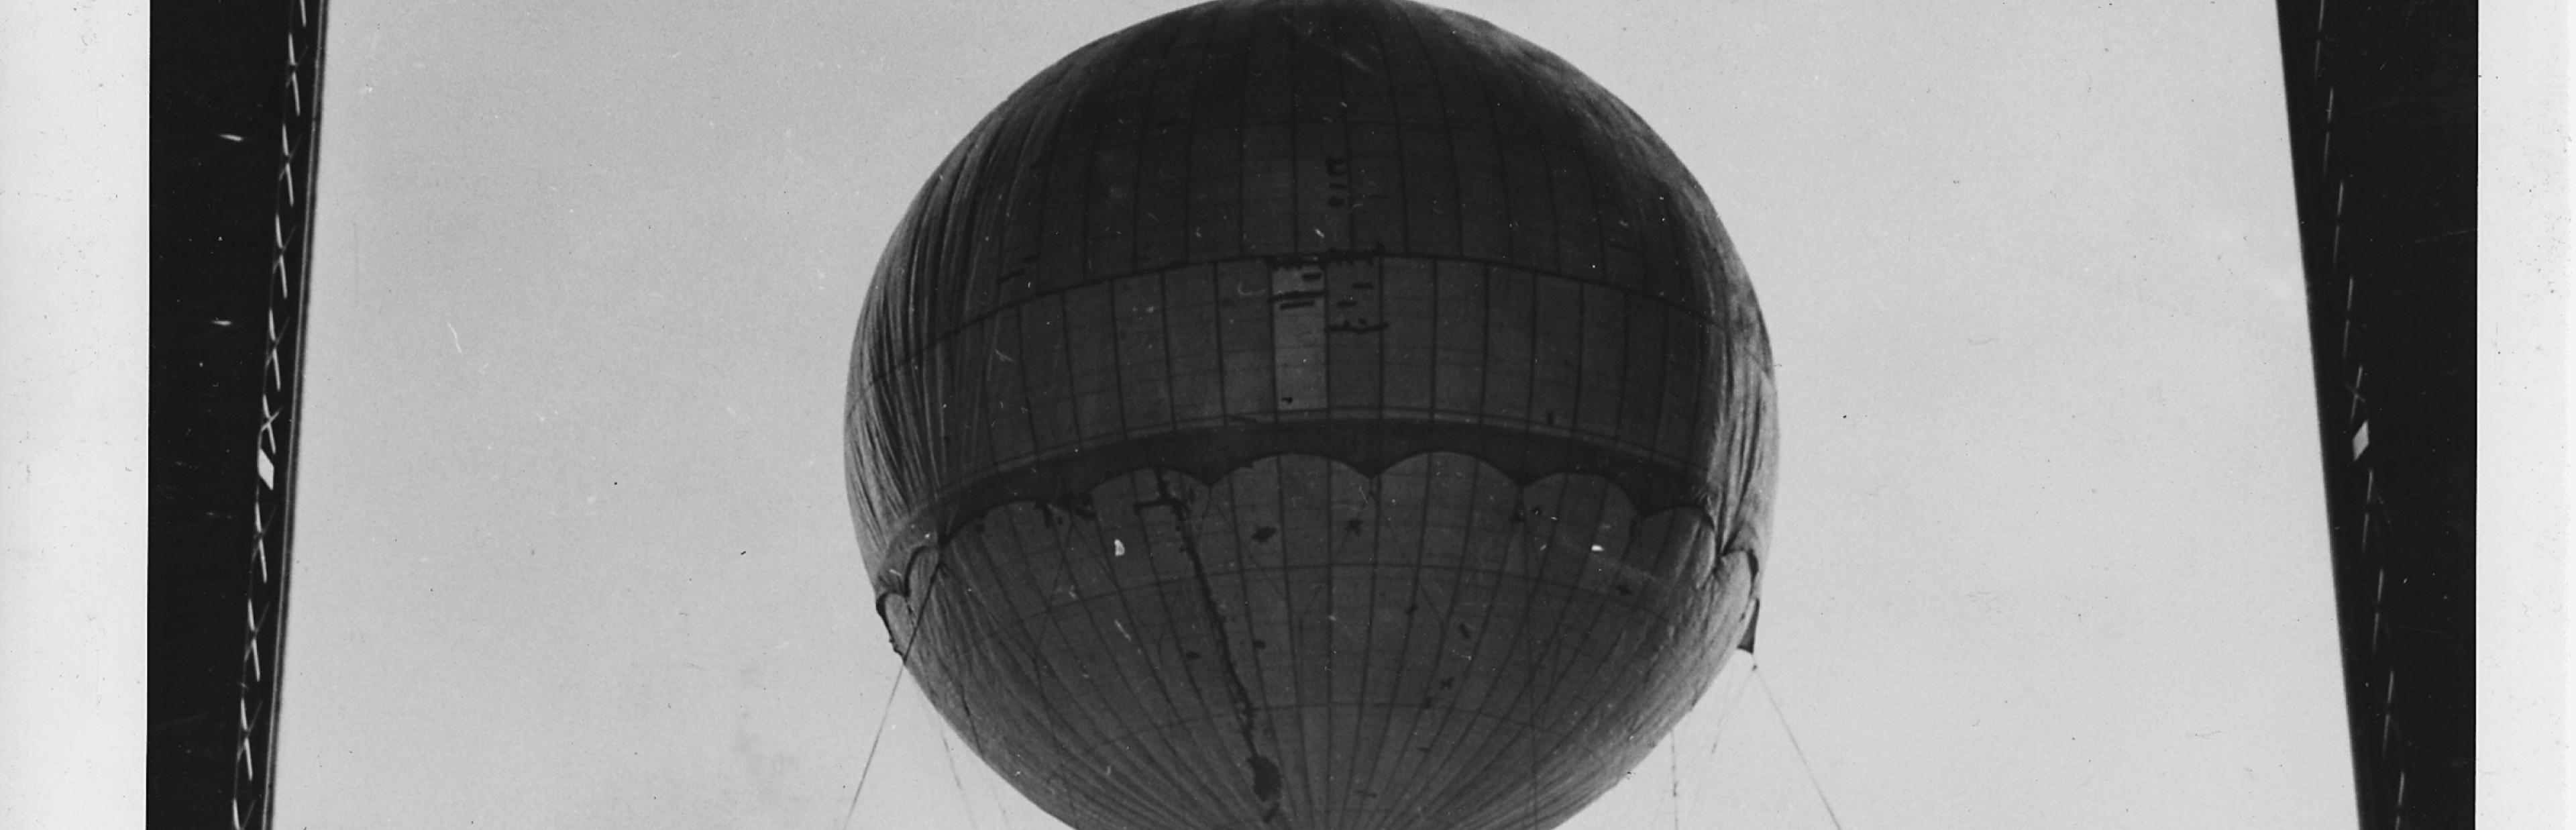 Schwarz-Weiß-Foto eines japanischen Ballons aus dem Zweiten Weltkrieg, der zu Testzwecken vom US-Militär erneut aufgeblasen wurde.